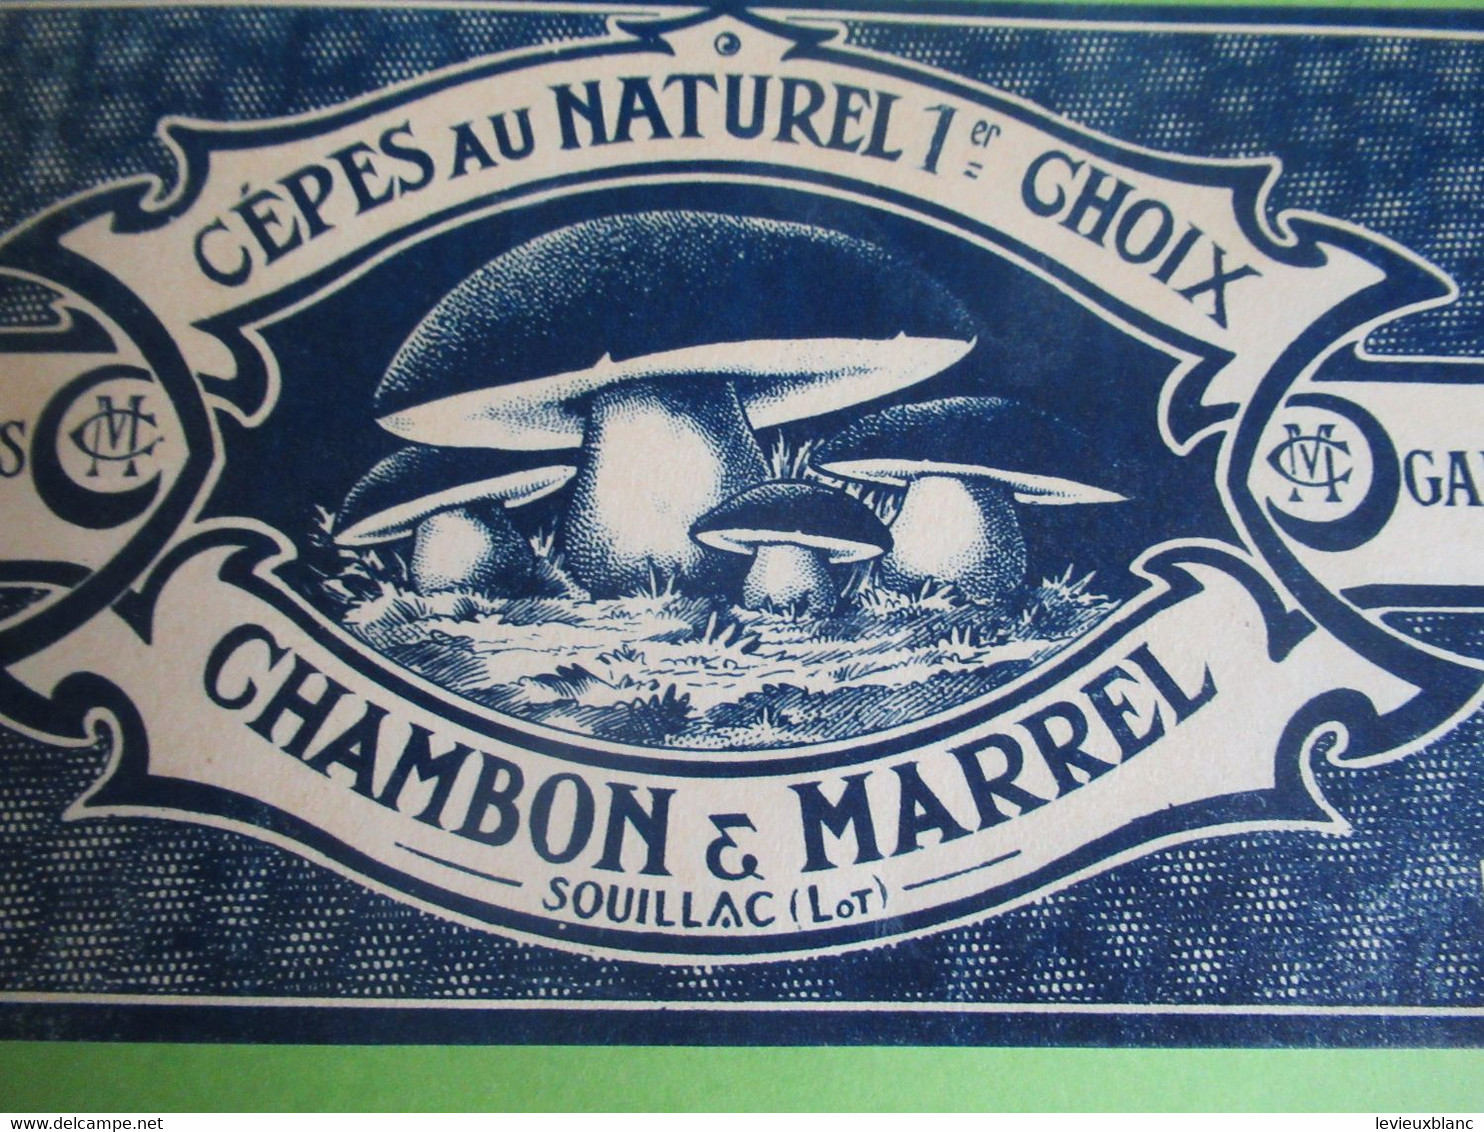 Etiquette Conserve/Cèpes Au Naturel 1er Choix/CHAMBON & MARREL/SOUILLAC ( Lot ) / Début XX                  ETIQ182 - Fruit En Groenten